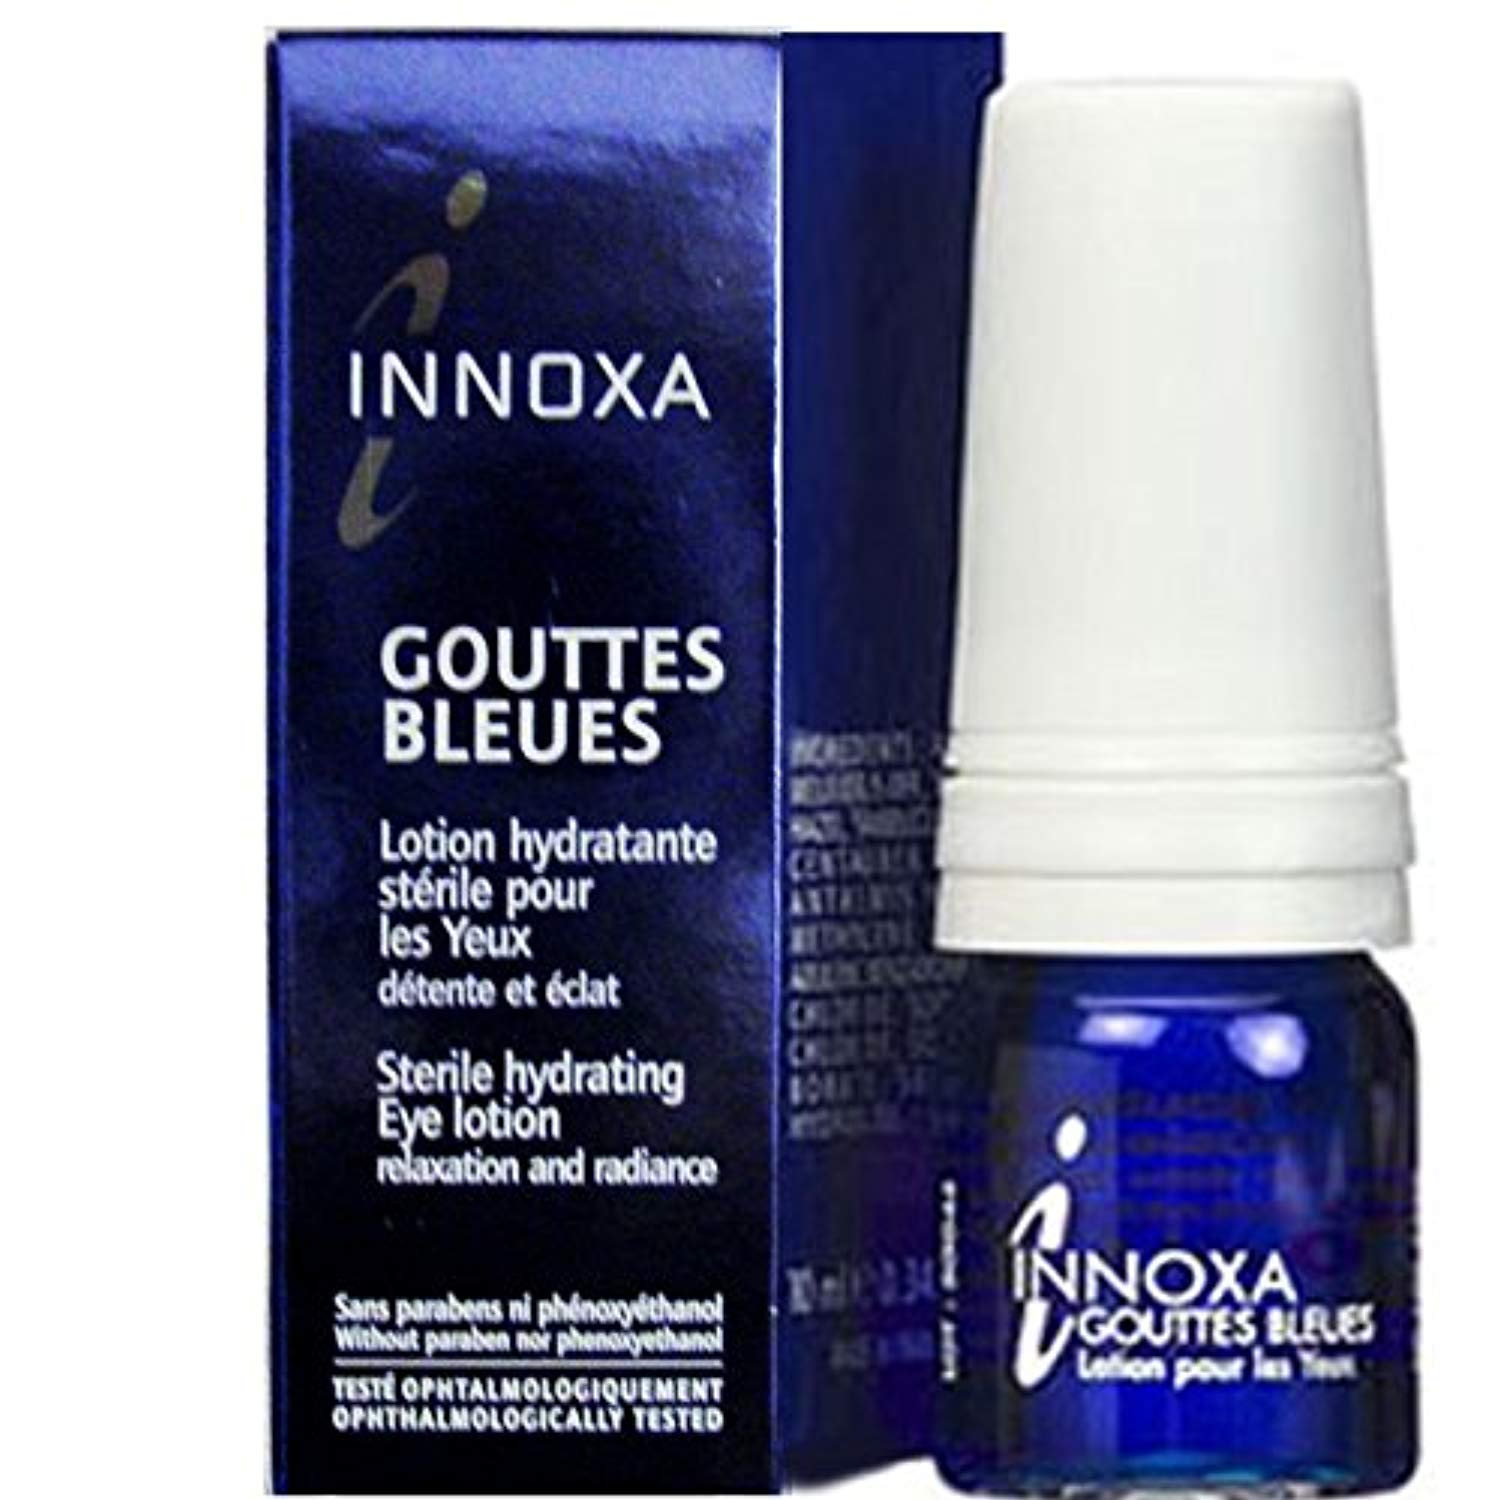 Innoxa Gouttes Bleues Lotion Hydratante Stérile Pour Yeux Flacons